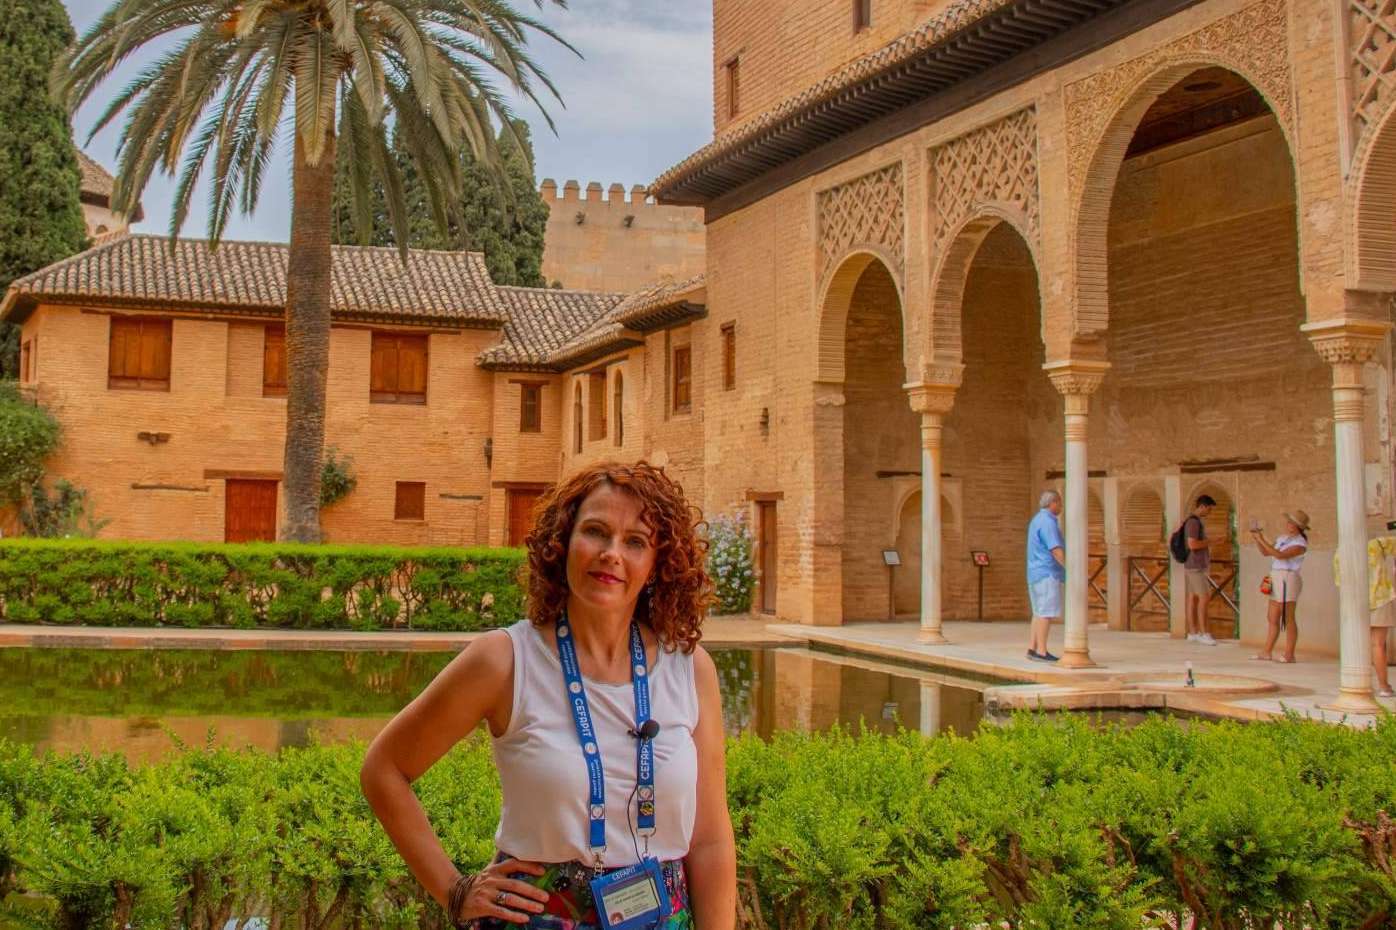 Arantxa Serrano ofrece visitas guiadas a la Alhambra, a través de una experiencia turística innovadora